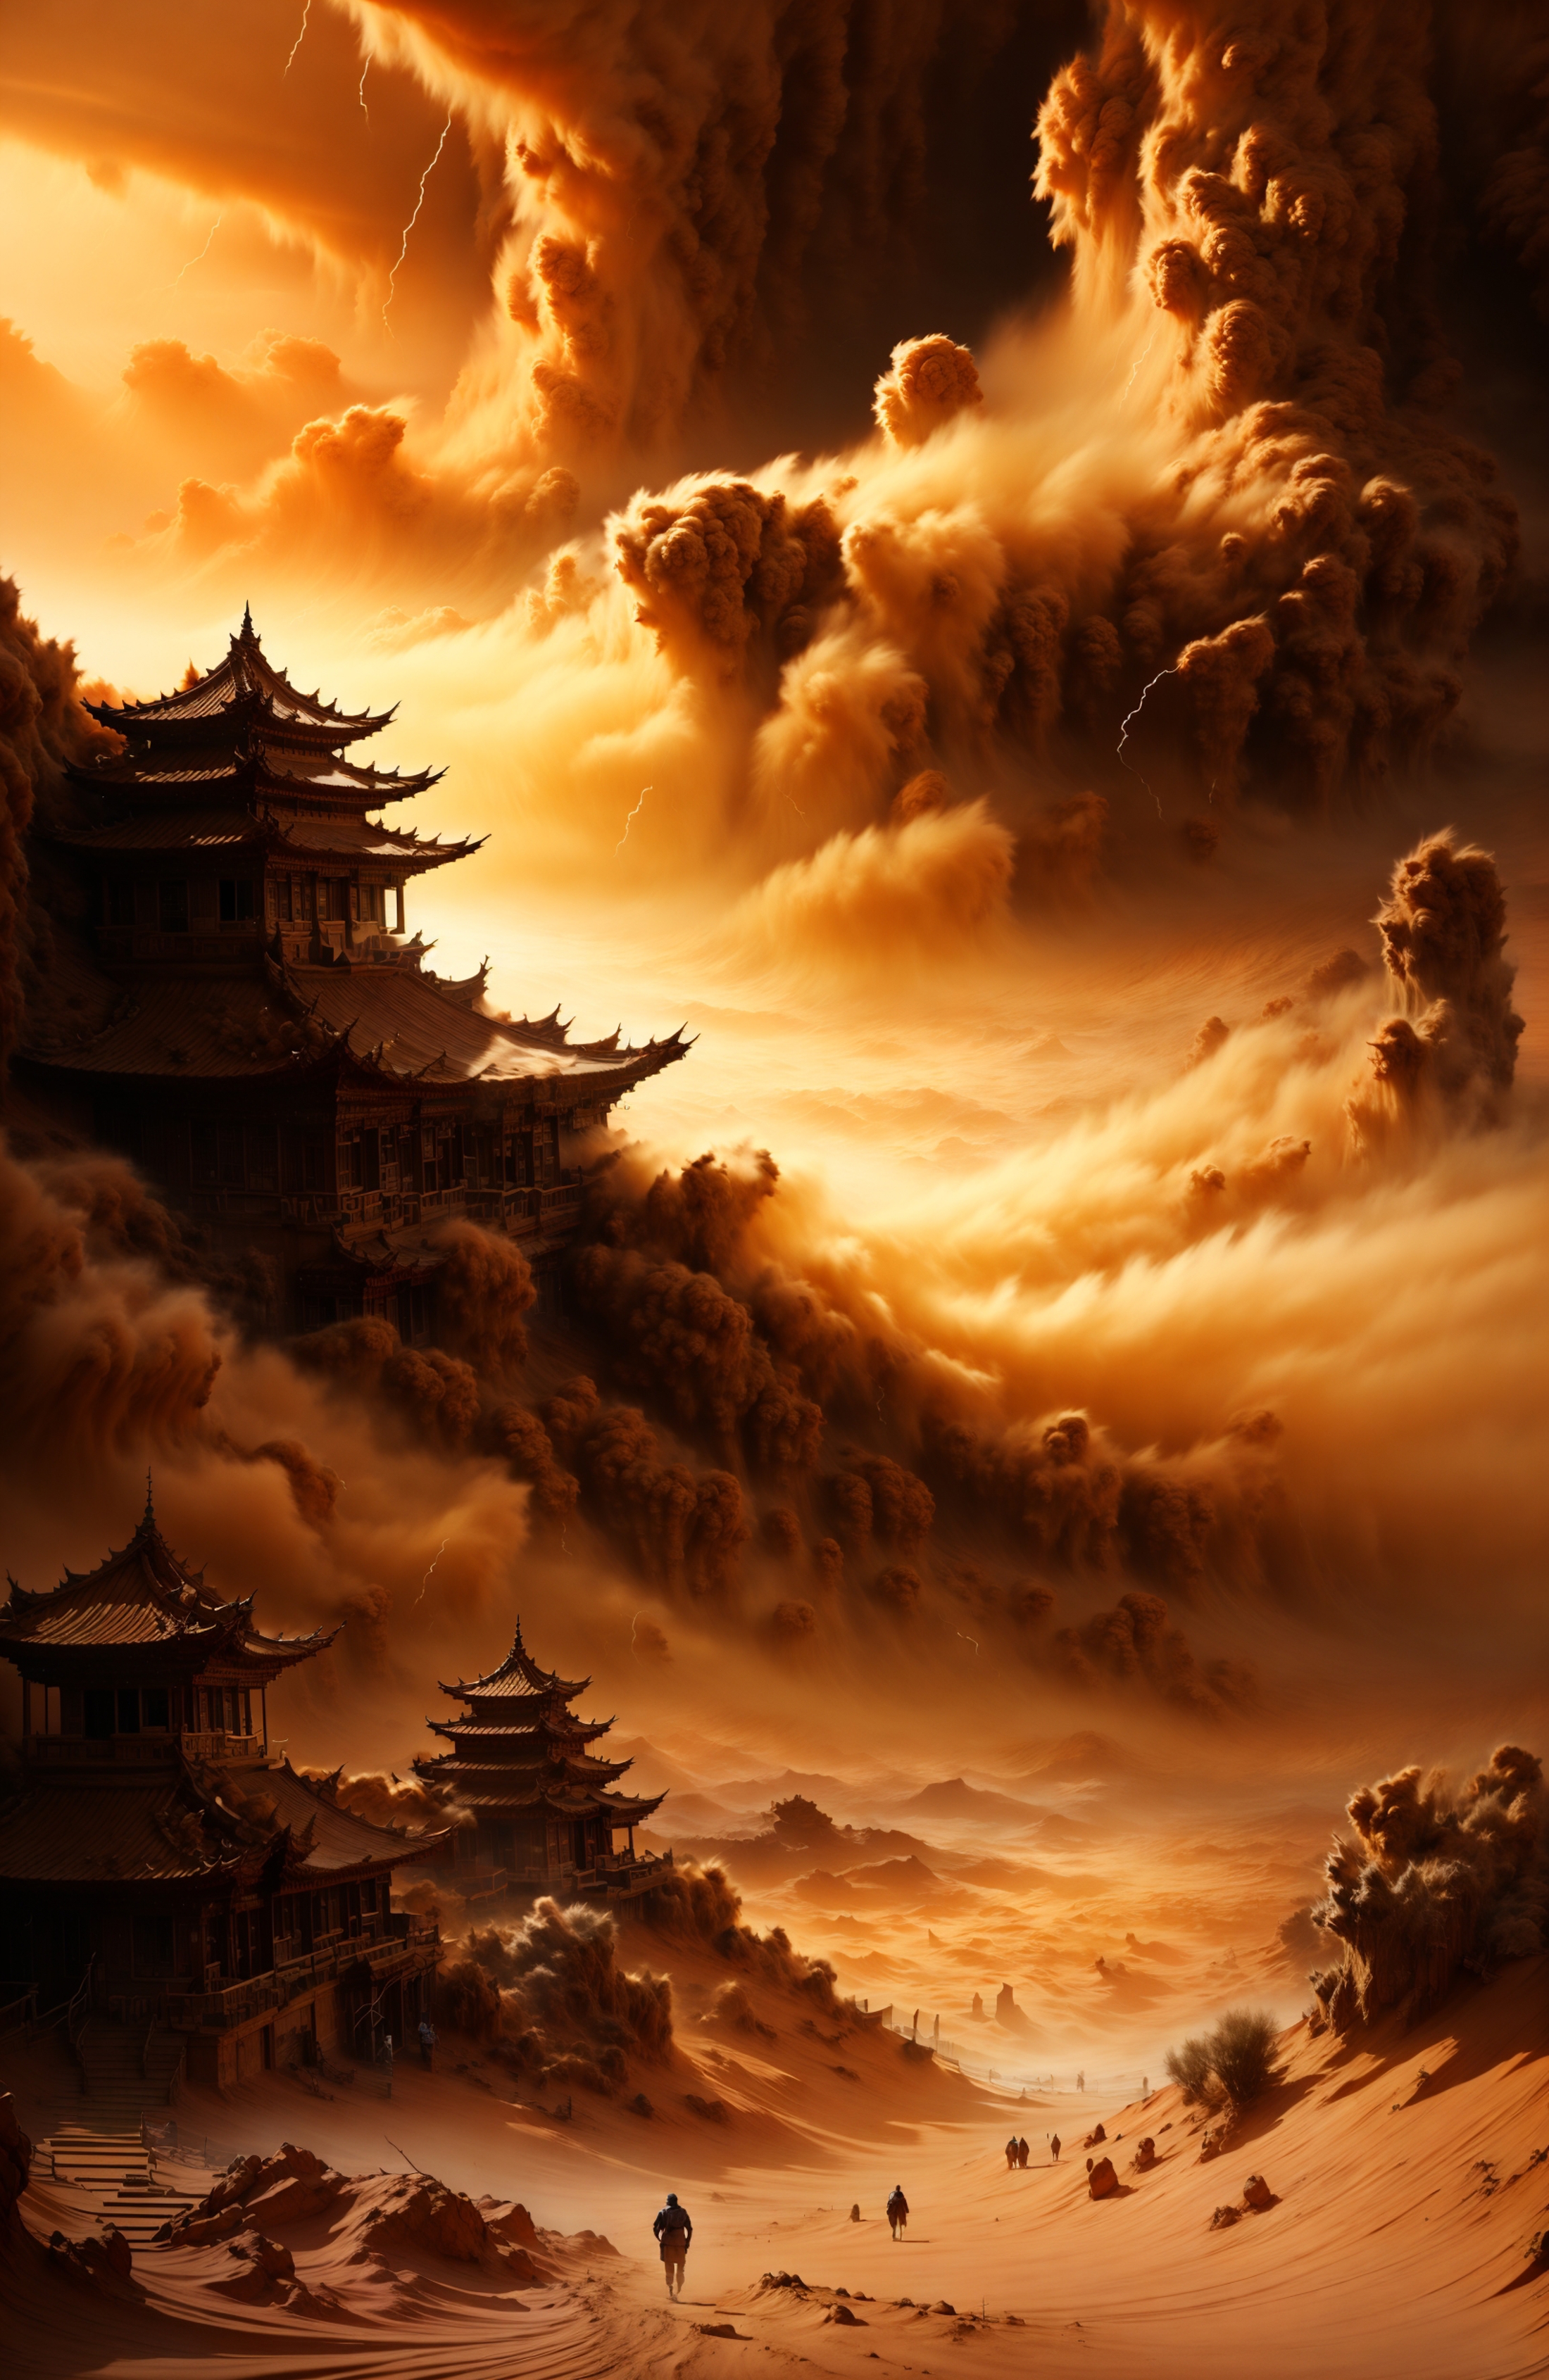 绪儿-末日沙暴 Doomsday sandstorm image by XRYCJ